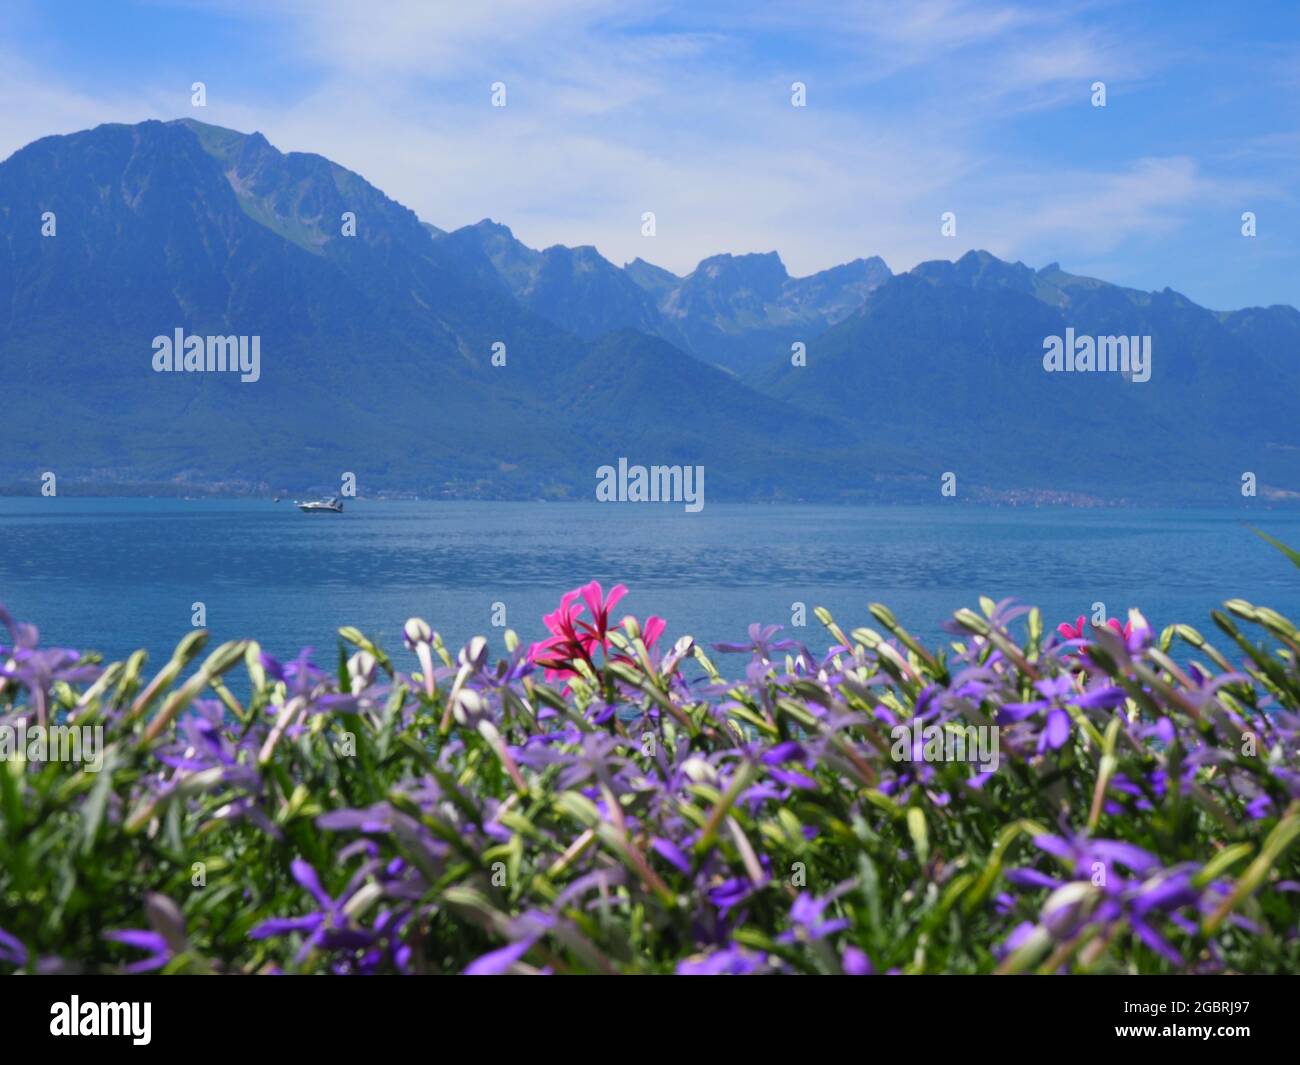 Violette Blumen an der Promenade in der europäischen Stadt Montreux am See  Leman im Kanton Waadt, Schweiz, klarer blauer Himmel an 2017 warmen  sonnigen Sommertagen im Juli Stockfotografie - Alamy